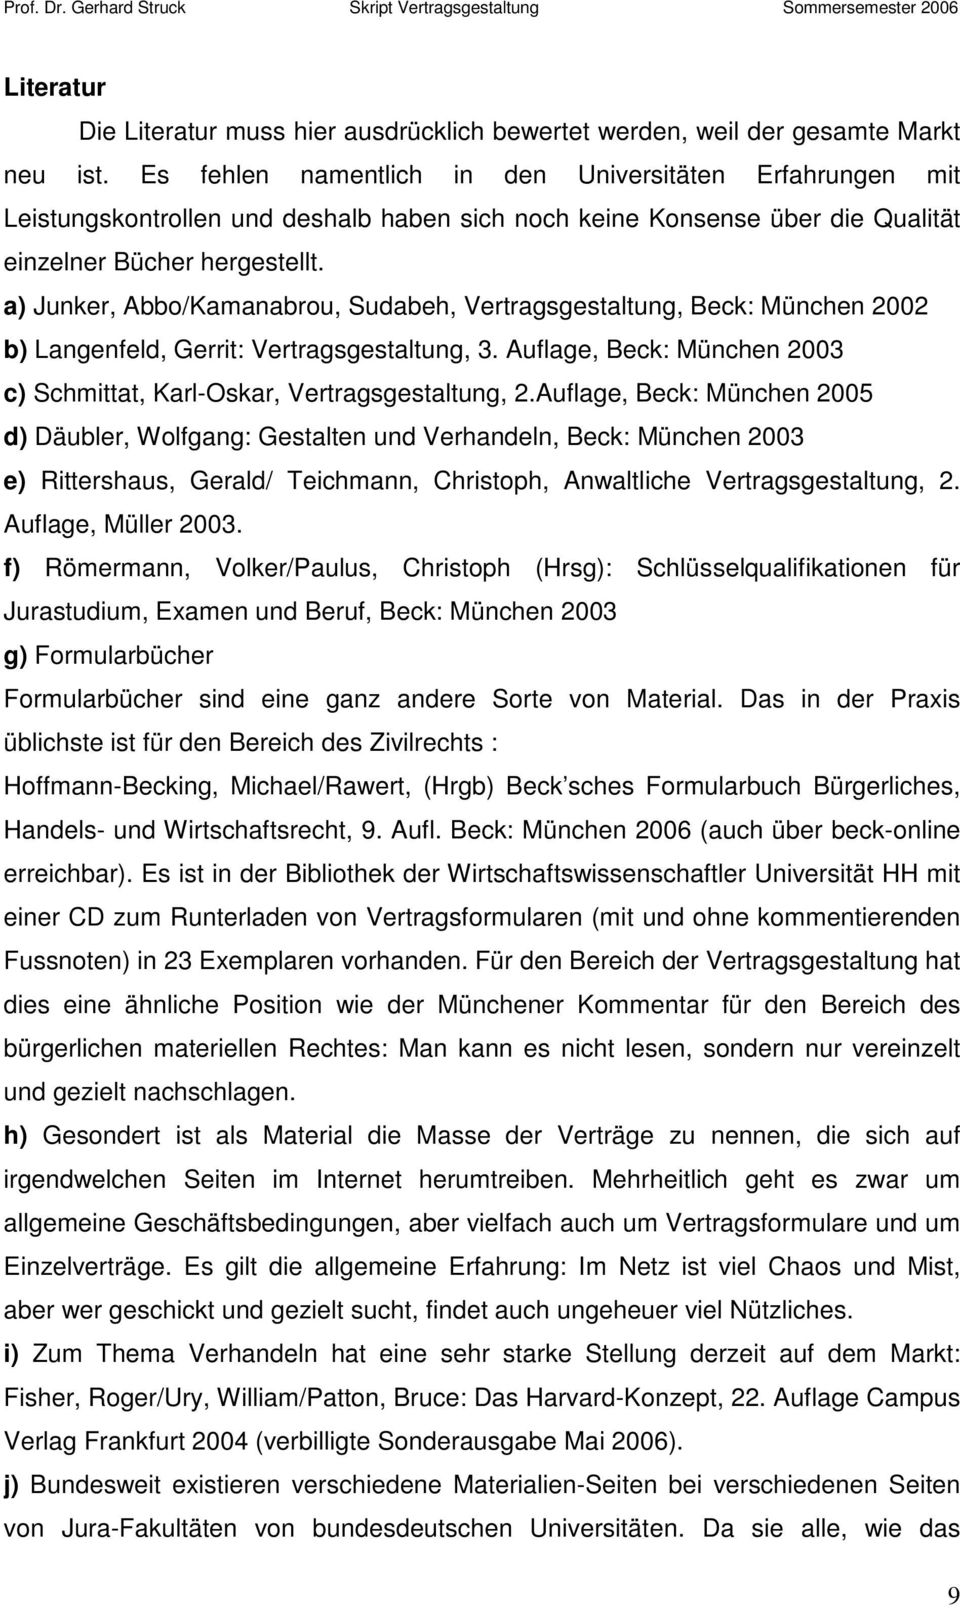 a) Junker, Abbo/Kamanabrou, Sudabeh, Vertragsgestaltung, Beck: München 2002 b) Langenfeld, Gerrit: Vertragsgestaltung, 3. Auflage, Beck: München 2003 c) Schmittat, Karl-Oskar, Vertragsgestaltung, 2.